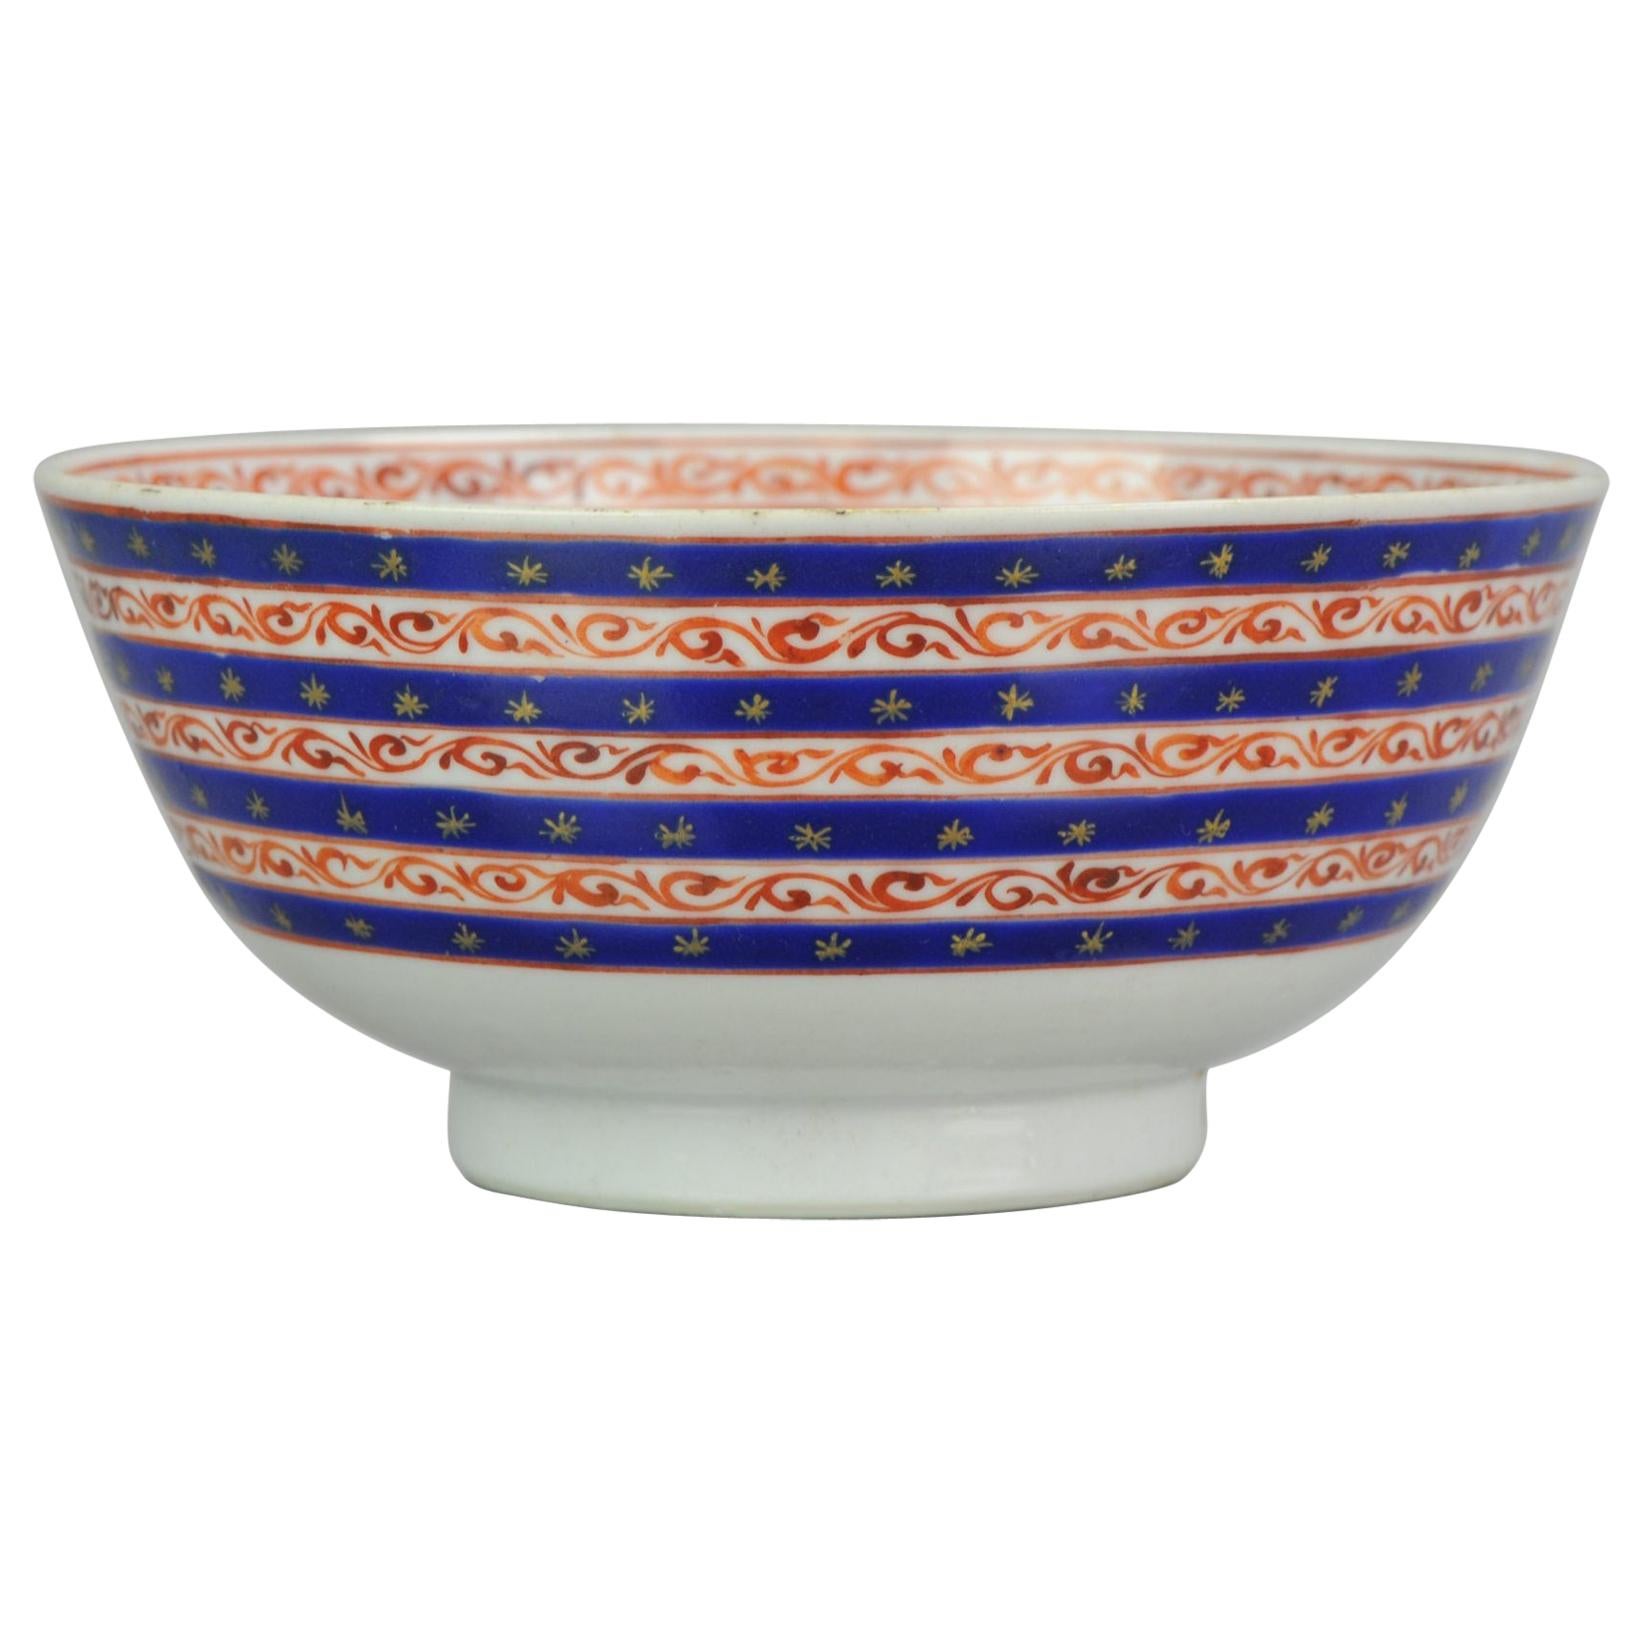 Antique Jiaqing or Qianlong Islamic or Persian Qing Chinese Porcelain